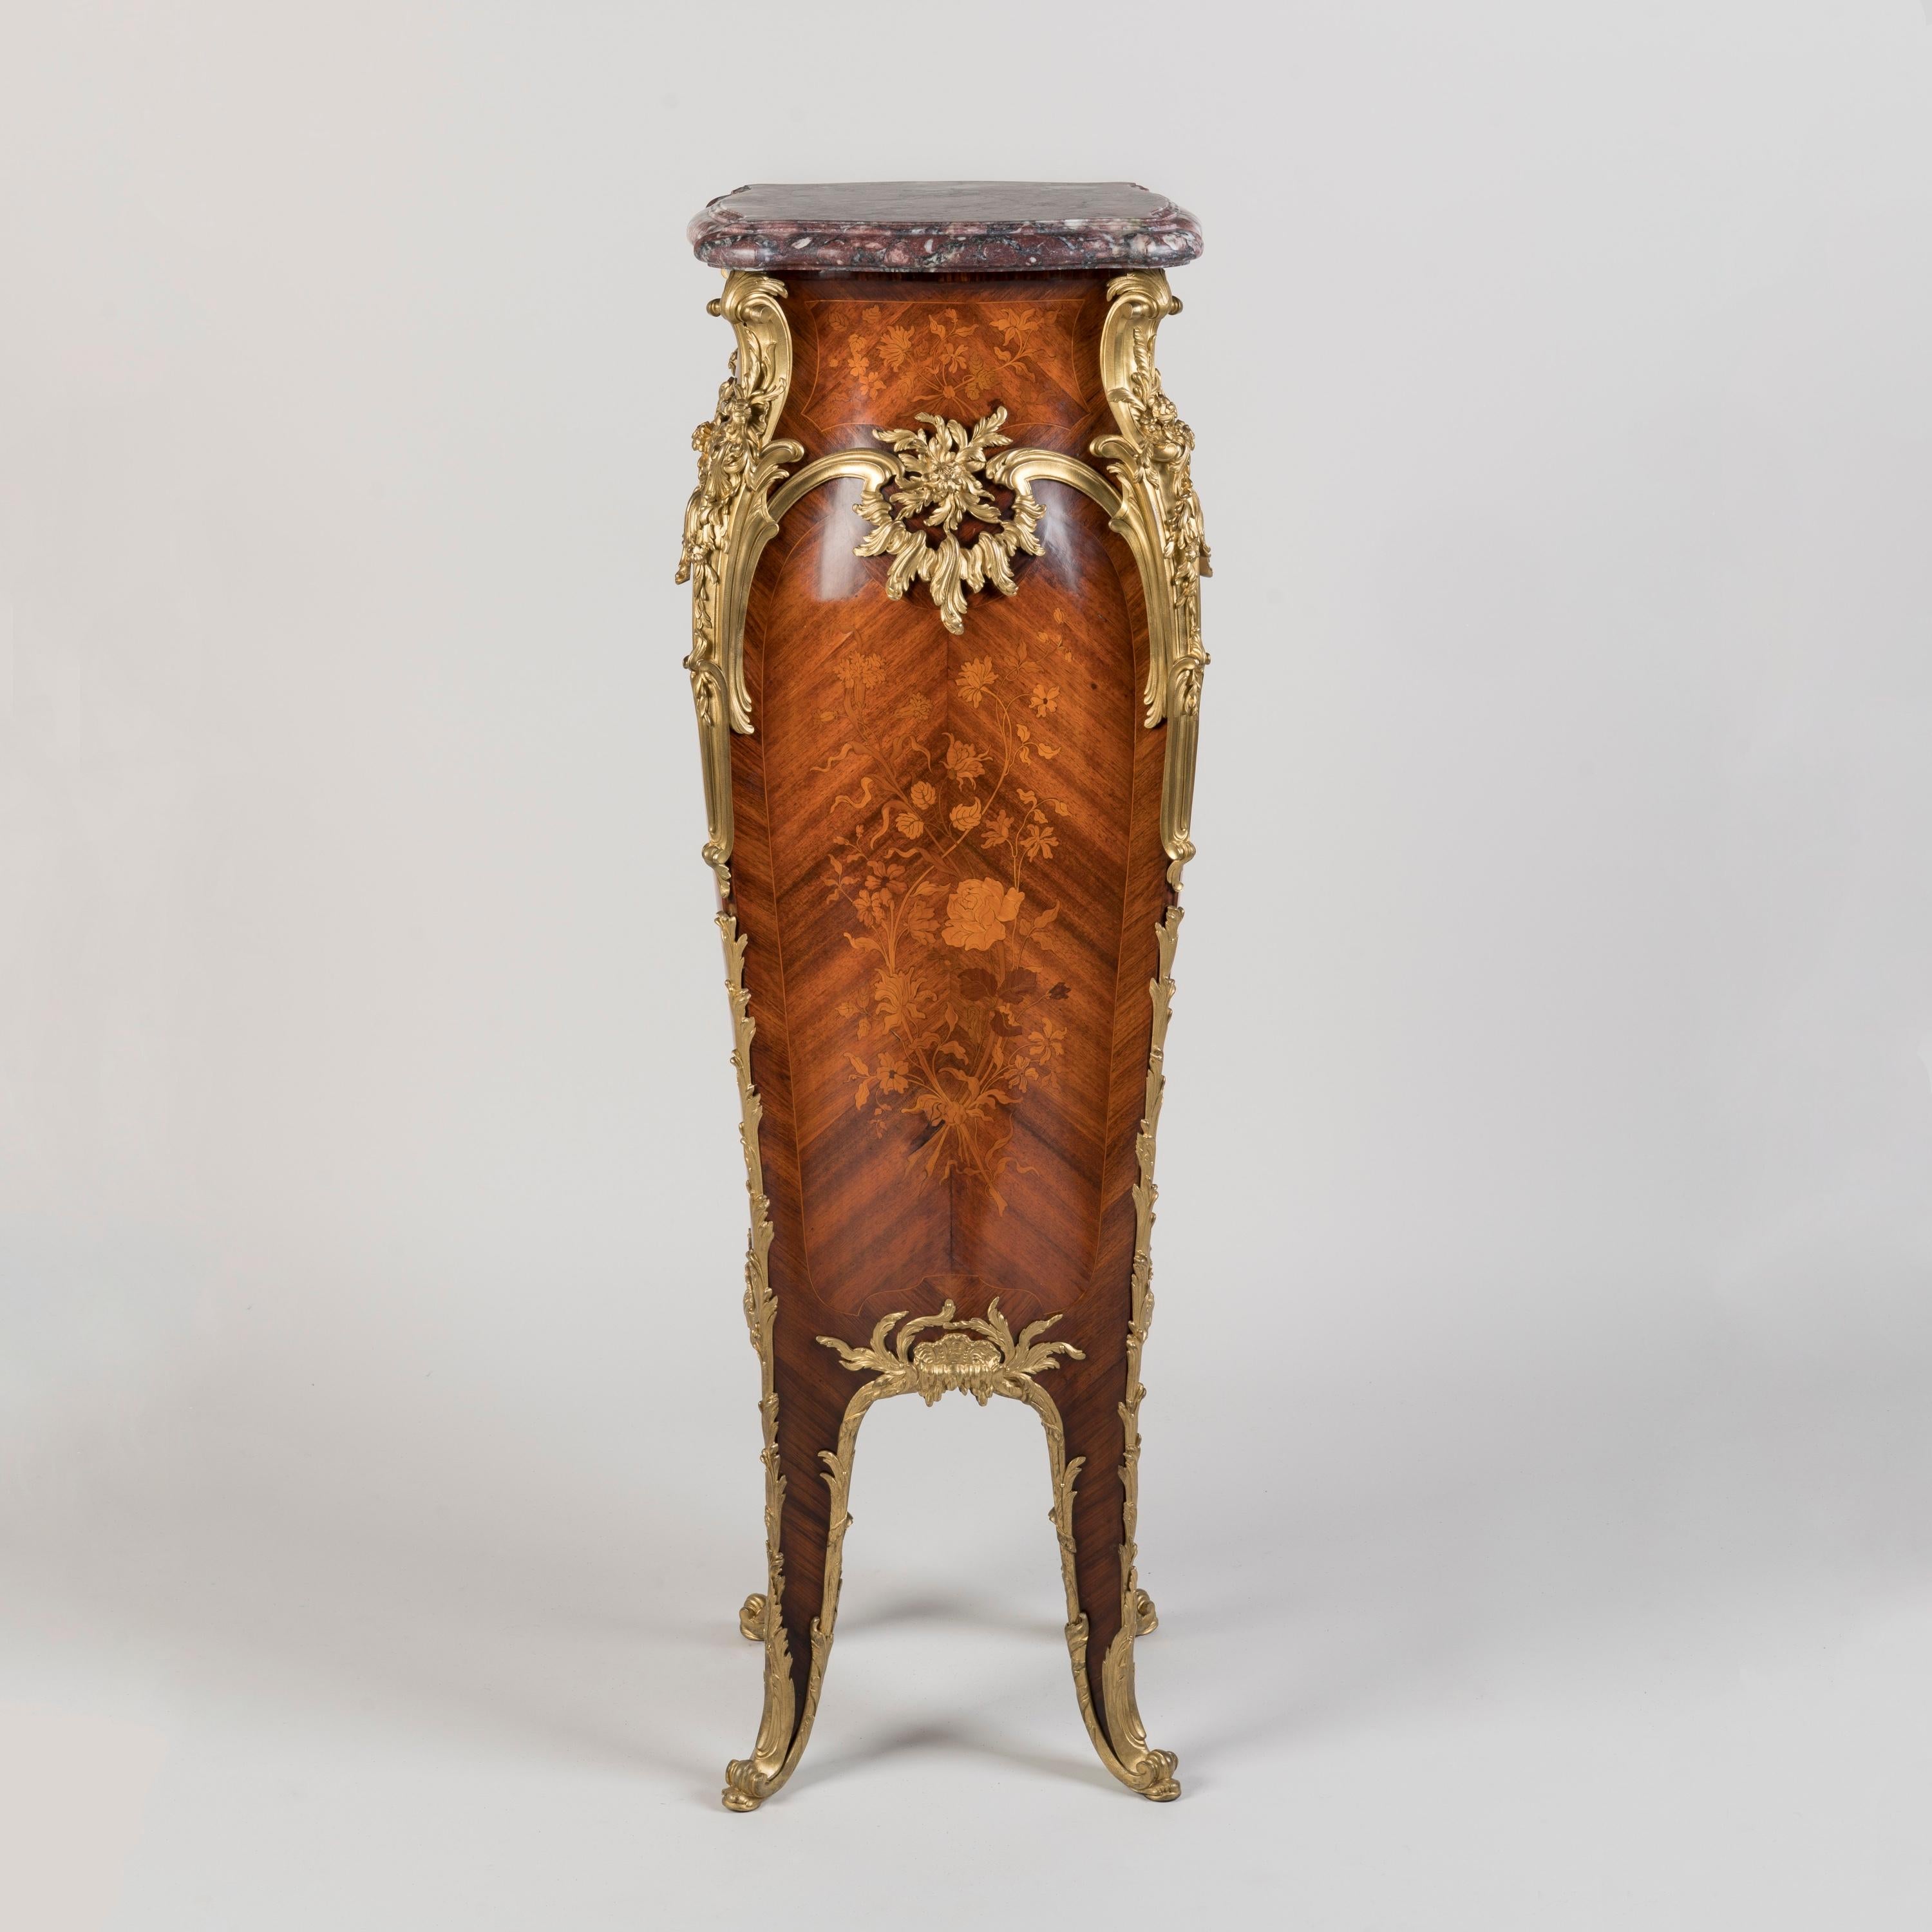 Ein mit Intarsien verzierter Sockel im Stil Louis XV
Index Nr. 184

Elegante Bombé-Form mit Querbordüren aus Königsholz und floralen Intarsien auf allen Seiten auf einem Boden aus Bois satiné, die Ecken sind mit Ormolu-Beschlägen mit Blattwerk